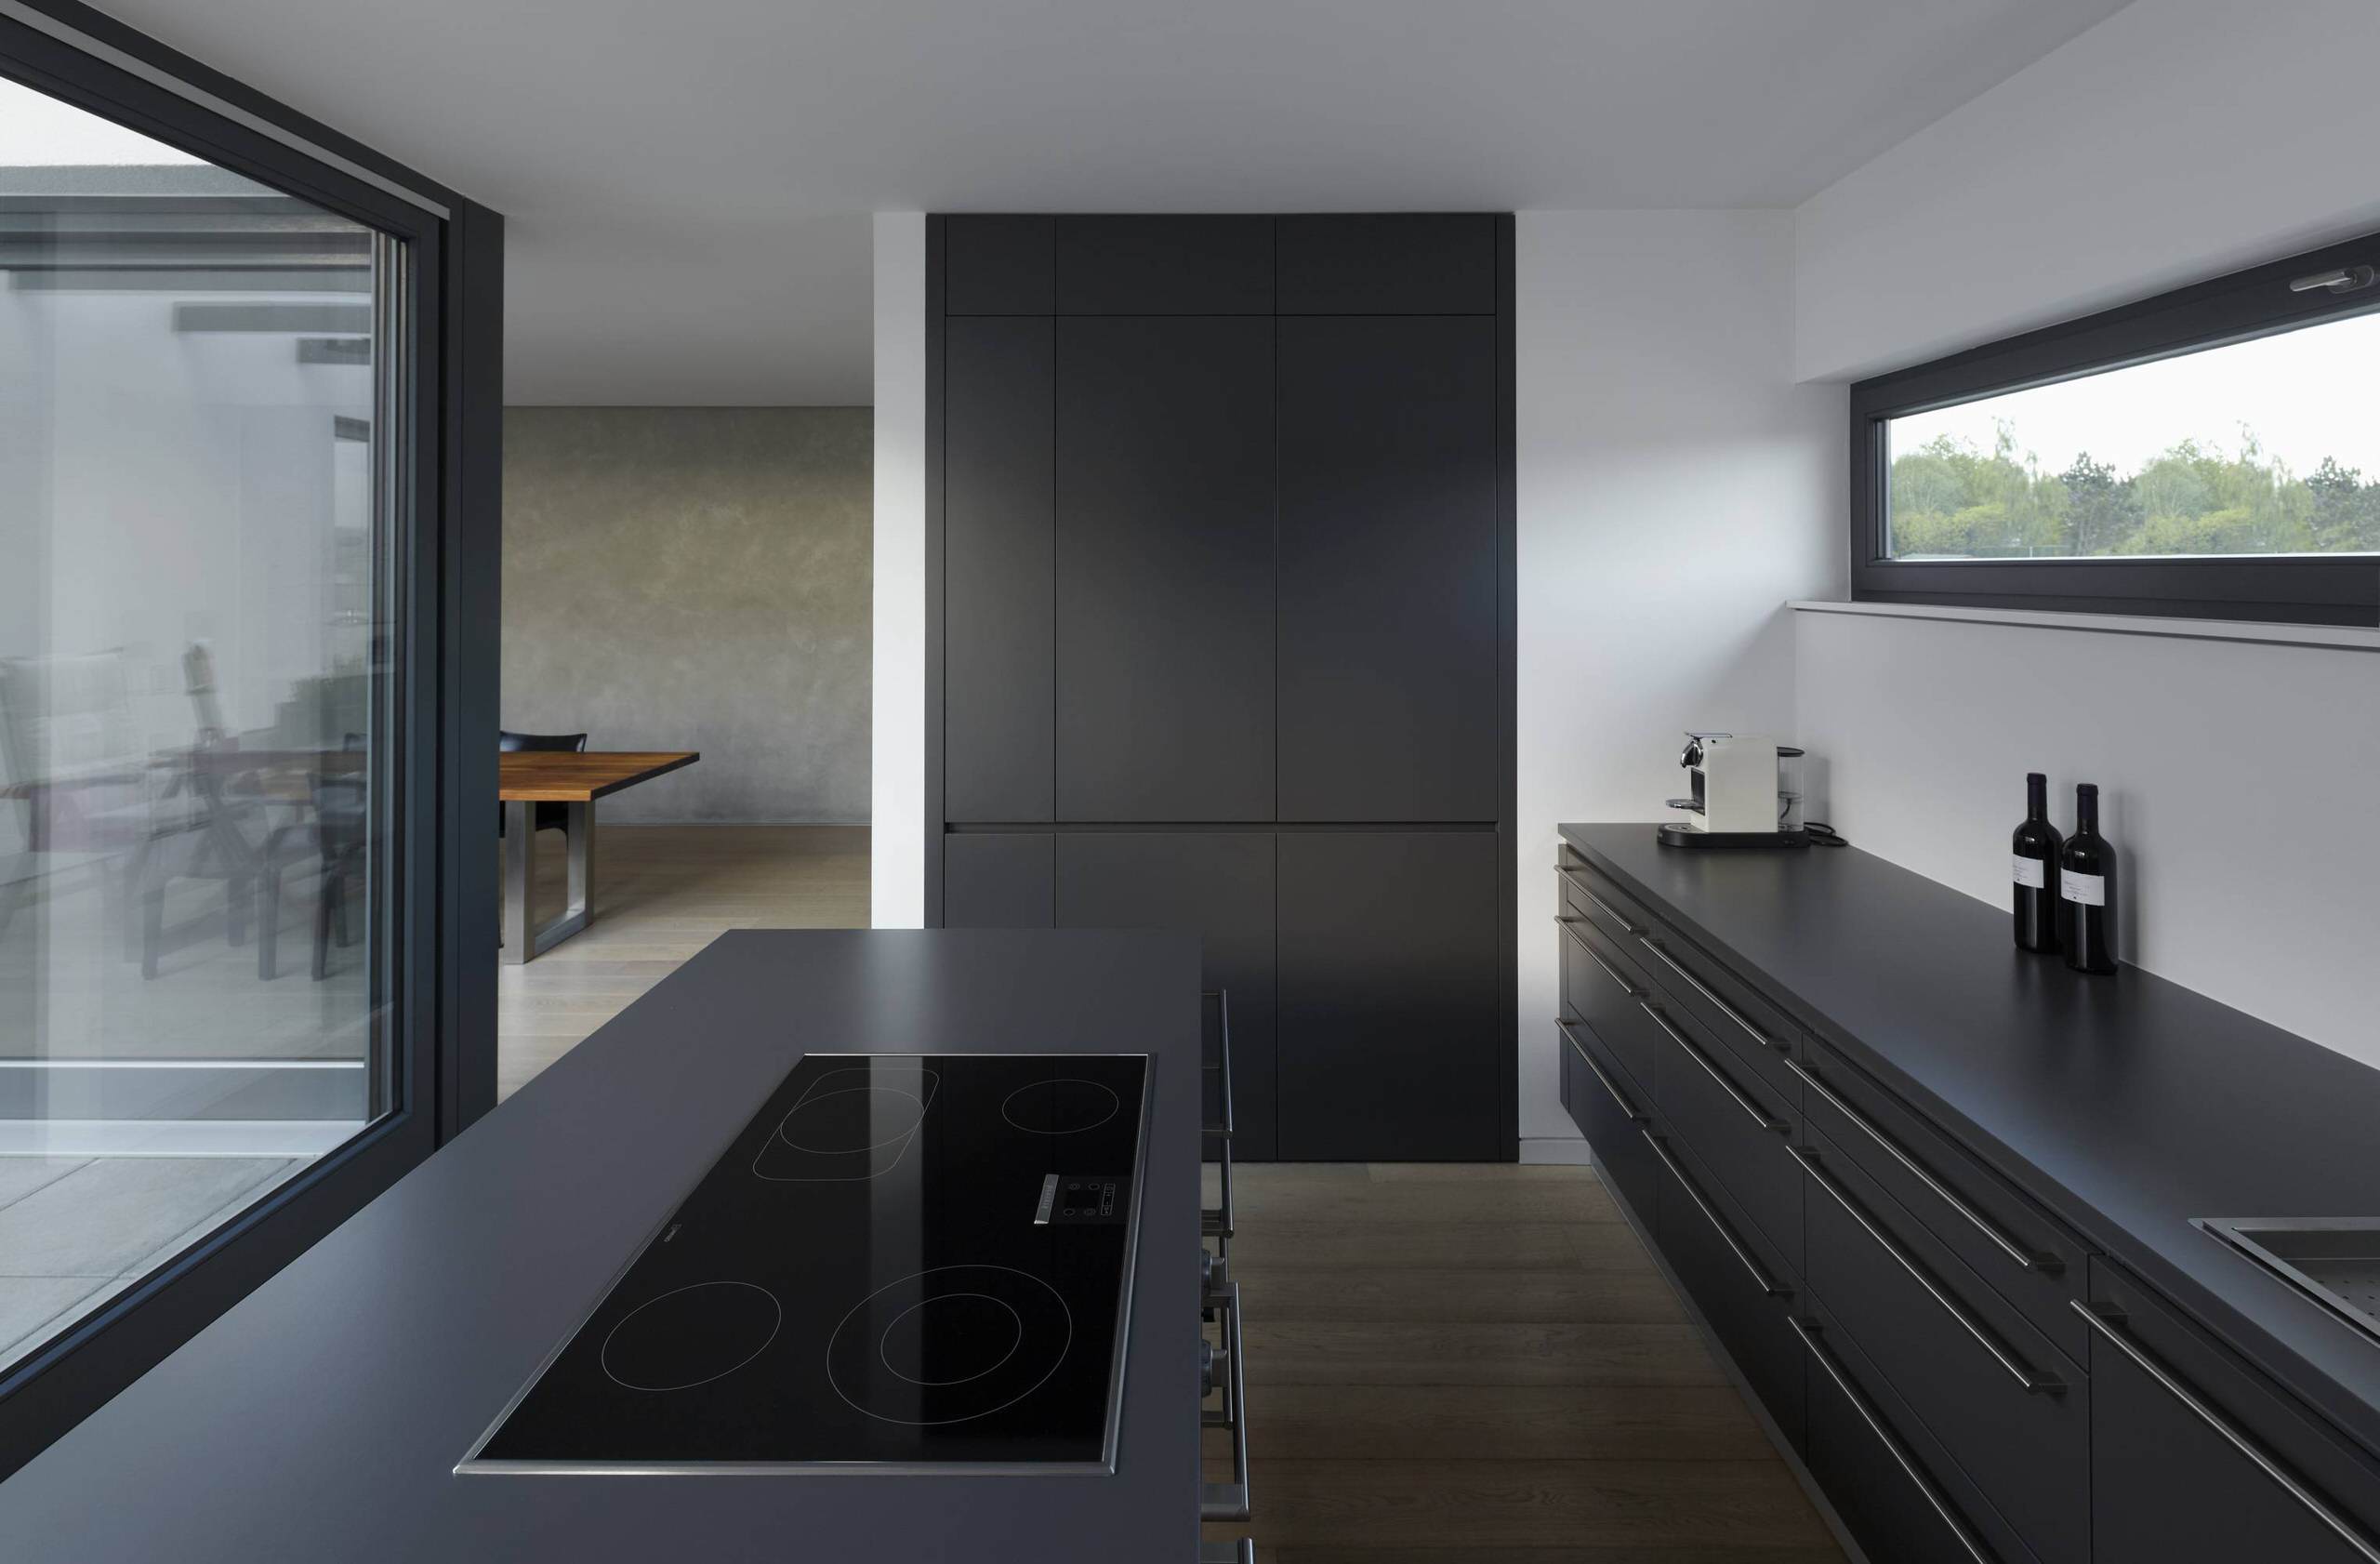 Schwarze Küche: 21 elegante Design-Ideen